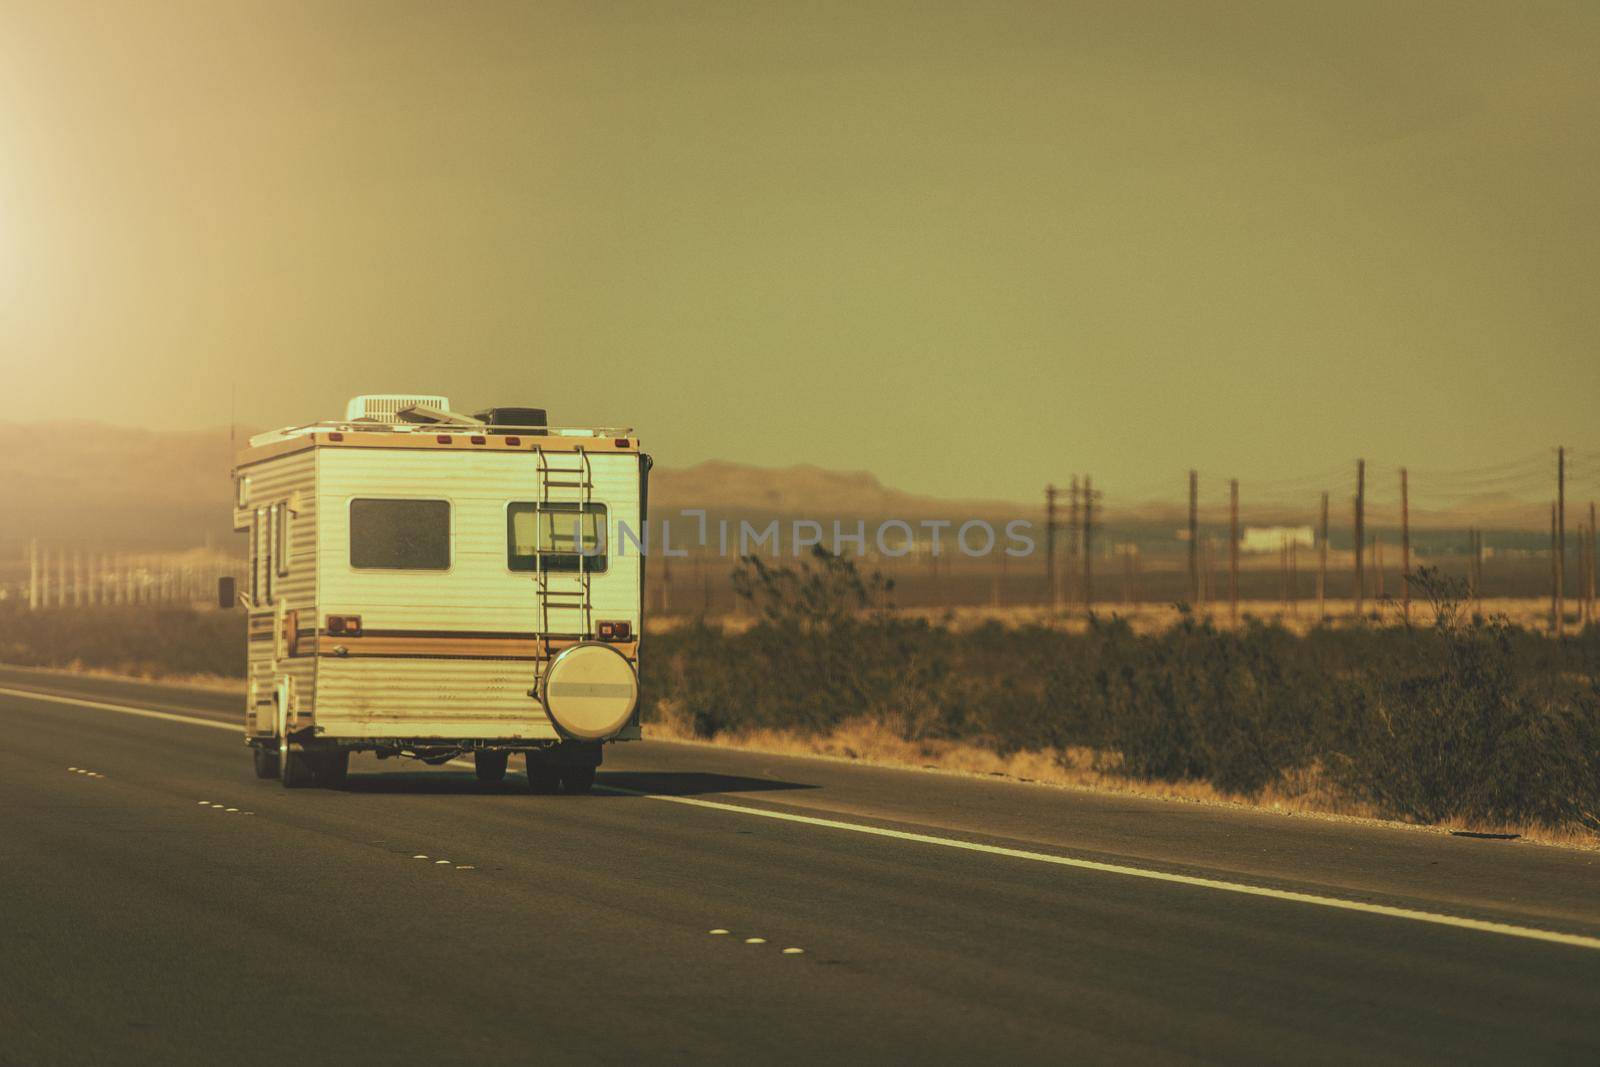 Vintage Aged Camper Van on a Highway by welcomia